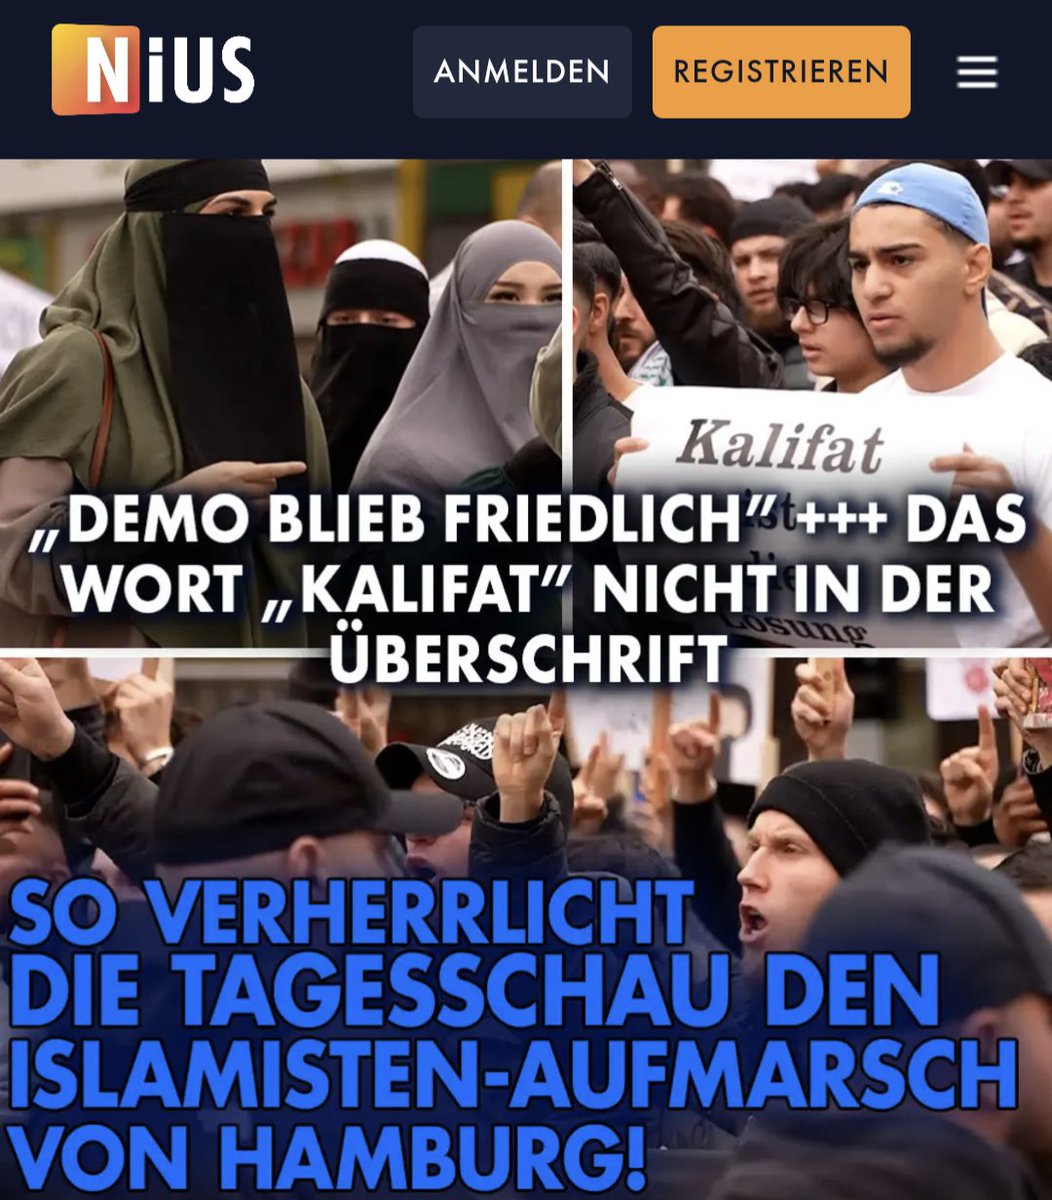 Das Deutschland der Tagesschau hat mit der Realität nichts mehr zu tun. Über den Islamisten-Aufmarsch wird nun in einer kurzen, verständnisvollen Meldung berichtet. 1. Das Wort 'Kalifat' kommt in der Überschrift nicht vor. 2. Zentrale Botschaft im Text: 'Demo blieb friedlich'.…